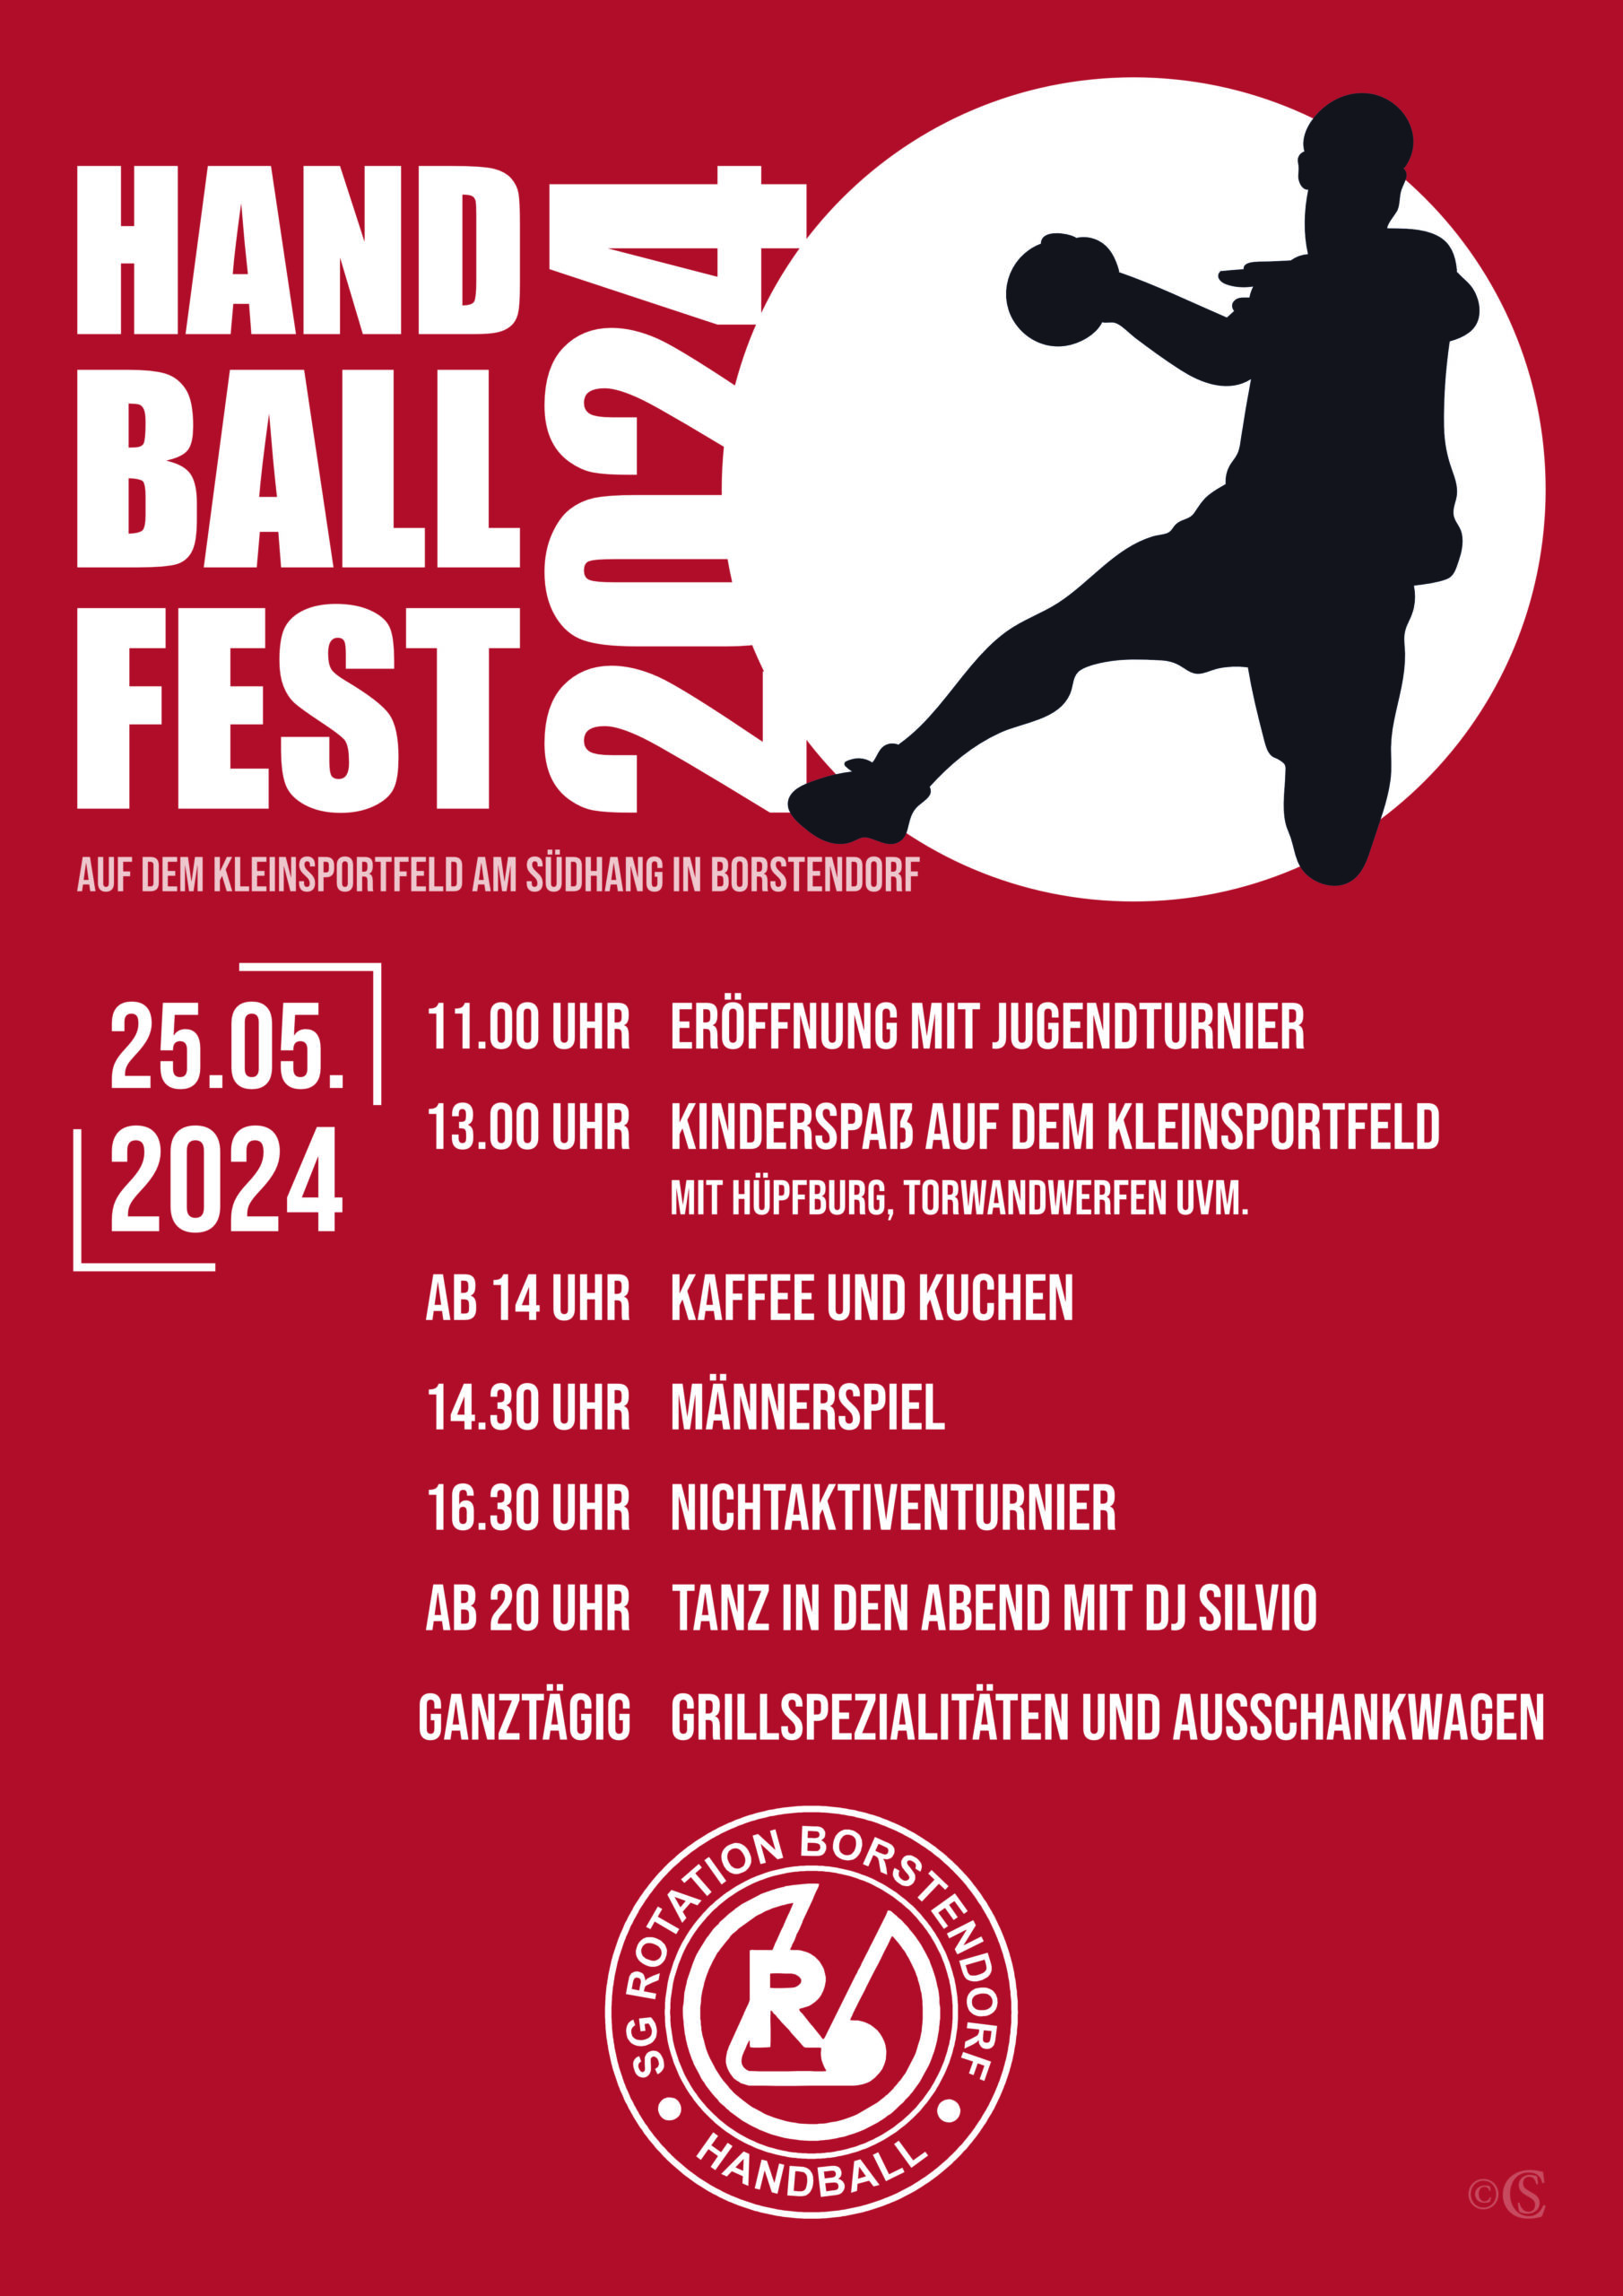 Handballfest in Borstendorf am 25.05.2024